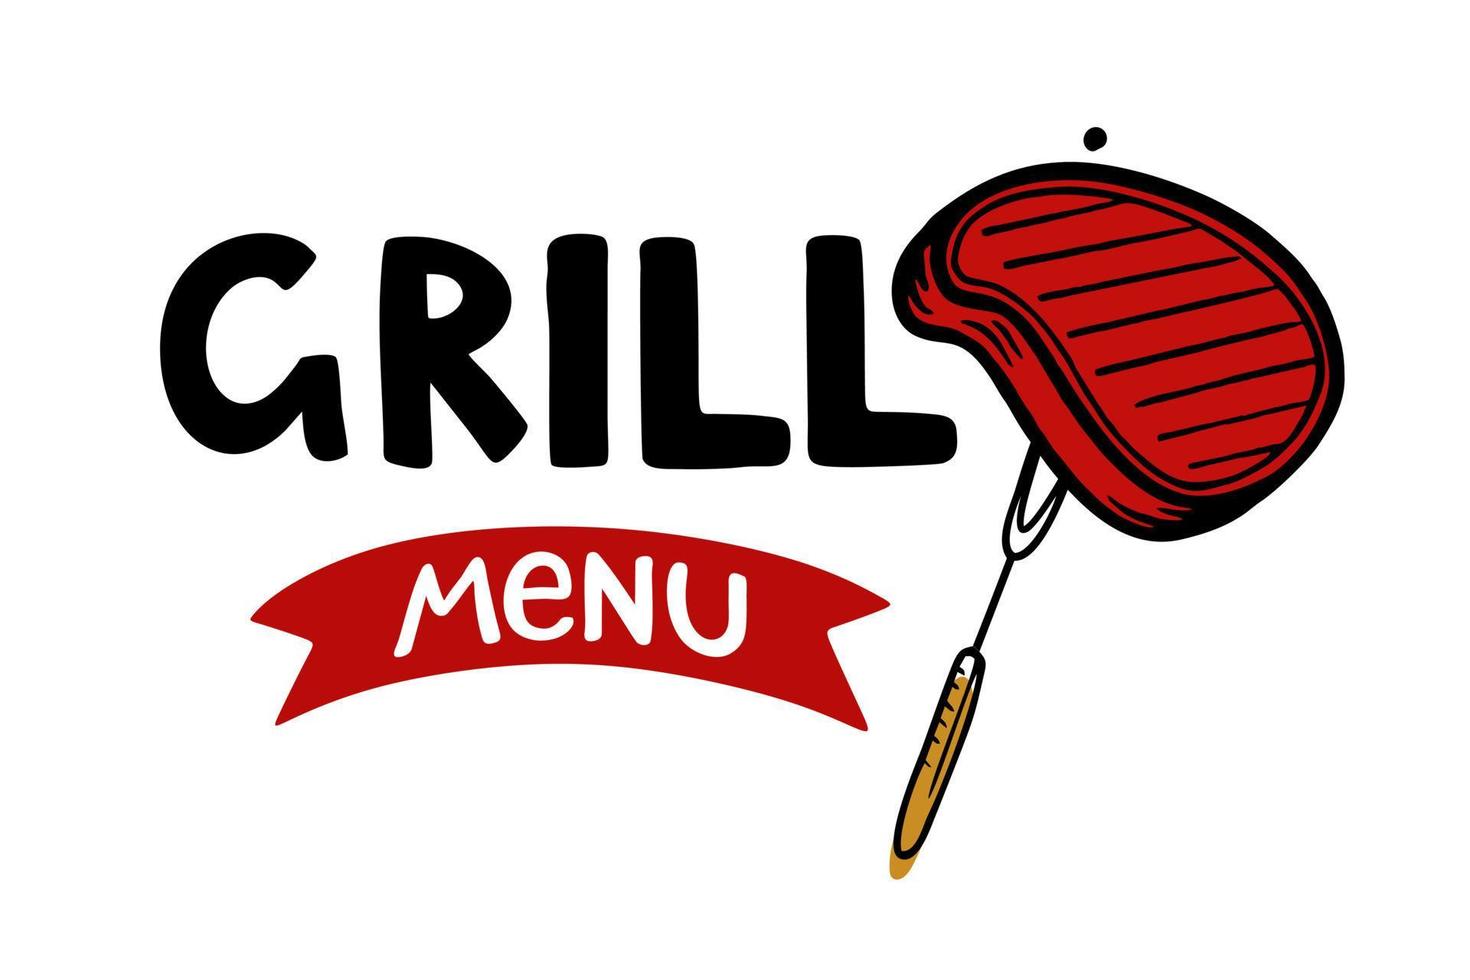 menu grill iscrizione disegnata a mano slogan food court logo menu ristorante bar caffetteria illustrazione vettoriale bistecca sulla forcella